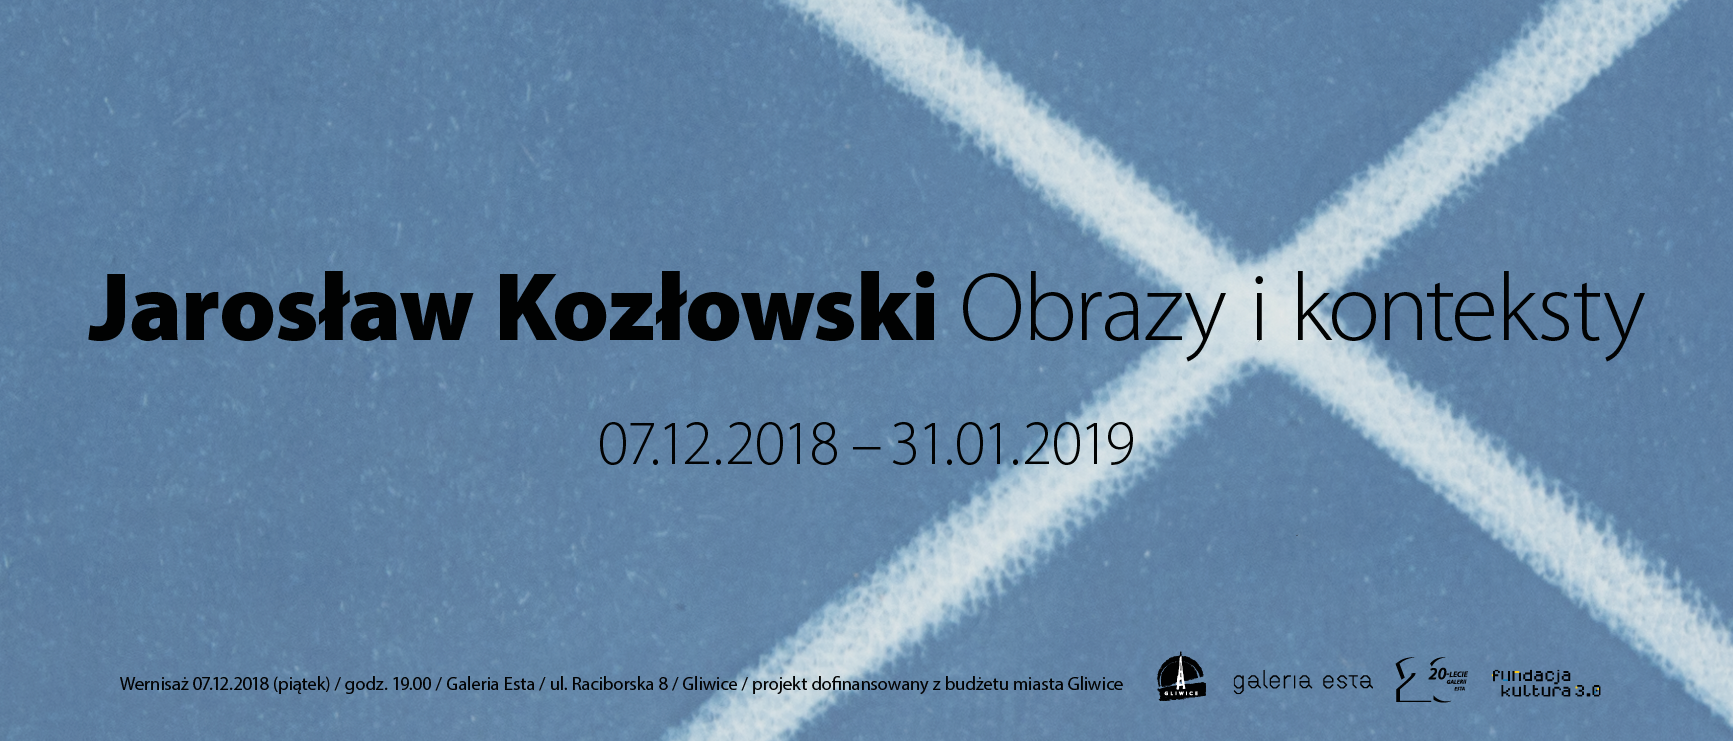 Wystawa Jarosław Kozłowski